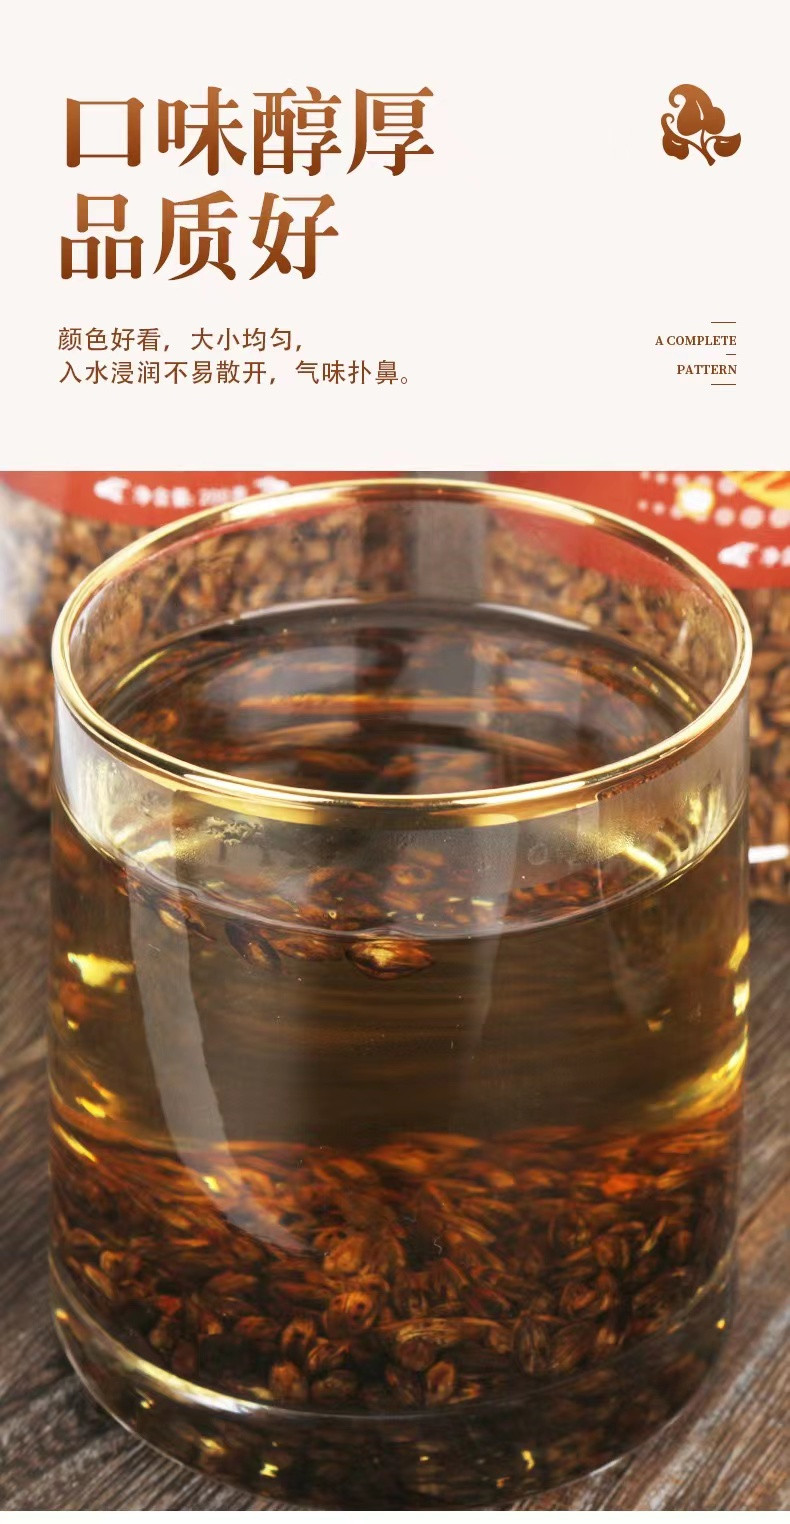 茗花百汇 【邮政助农】大麦茶200克/罐 醇香回甘常备茶饮【KM】